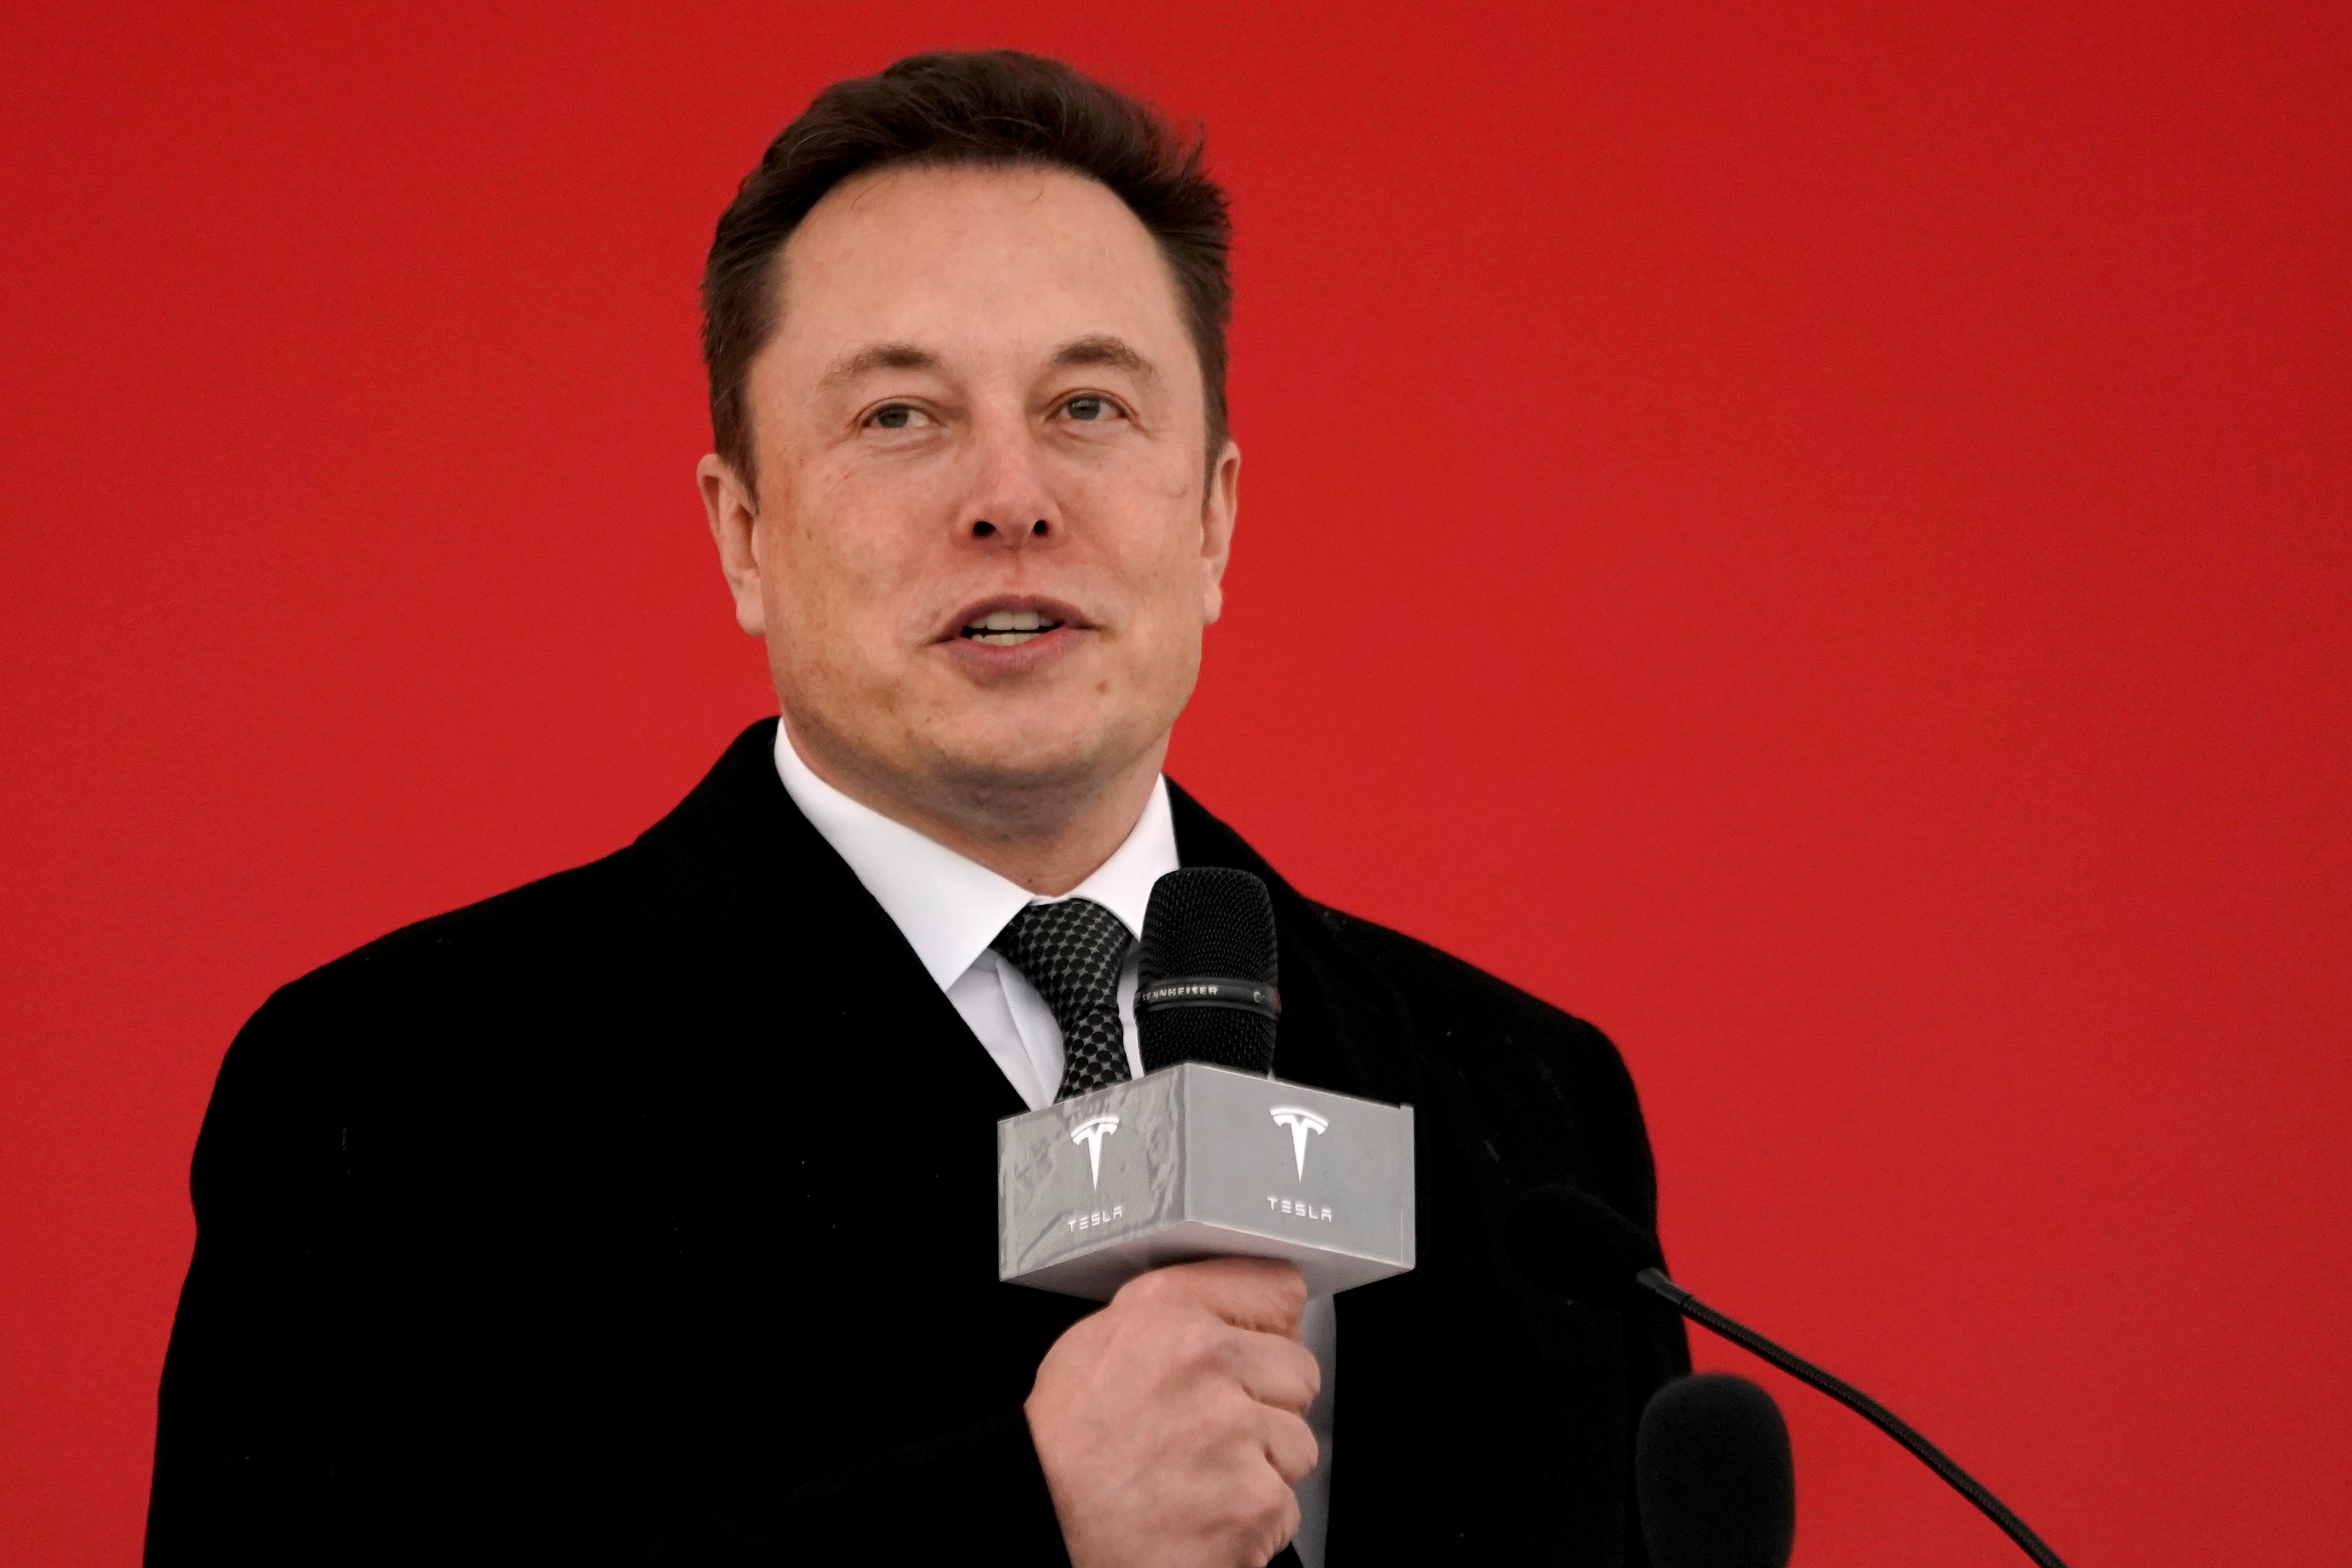 Elon Musk contra JP Morgan: “Los calificaré con una reputación de una estrella”